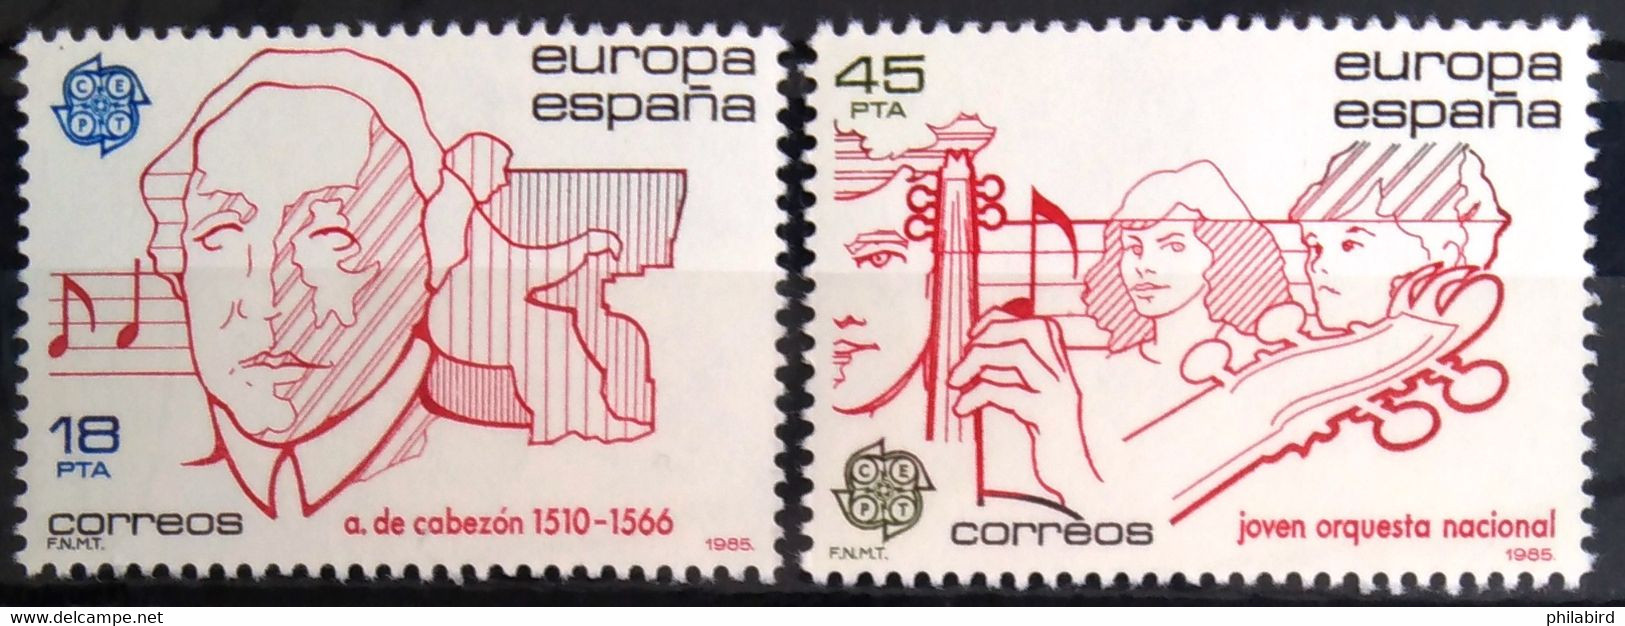 EUROPA 1985 - ESPAGNE                N° 2406/2407                       NEUF** - 1985